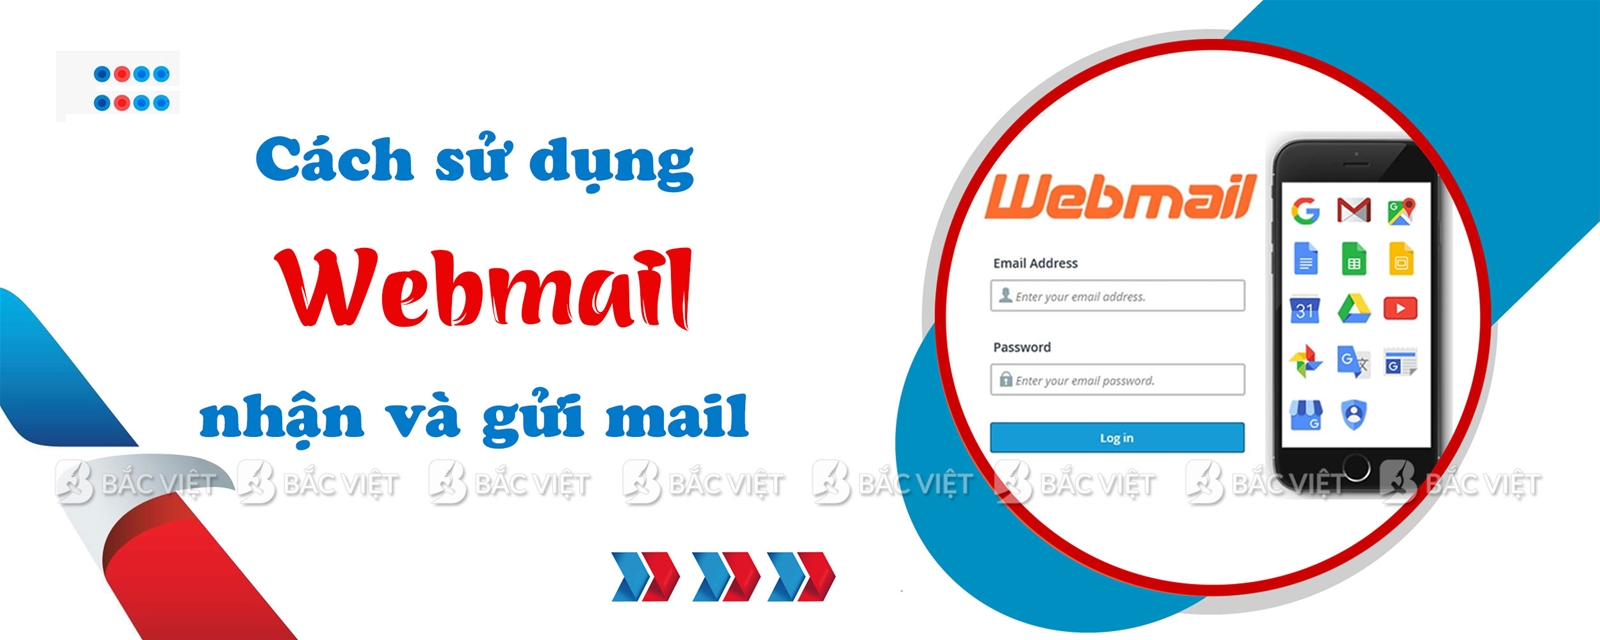 Webmail là gì? Hướng dẫn cách sử dụng Webmail